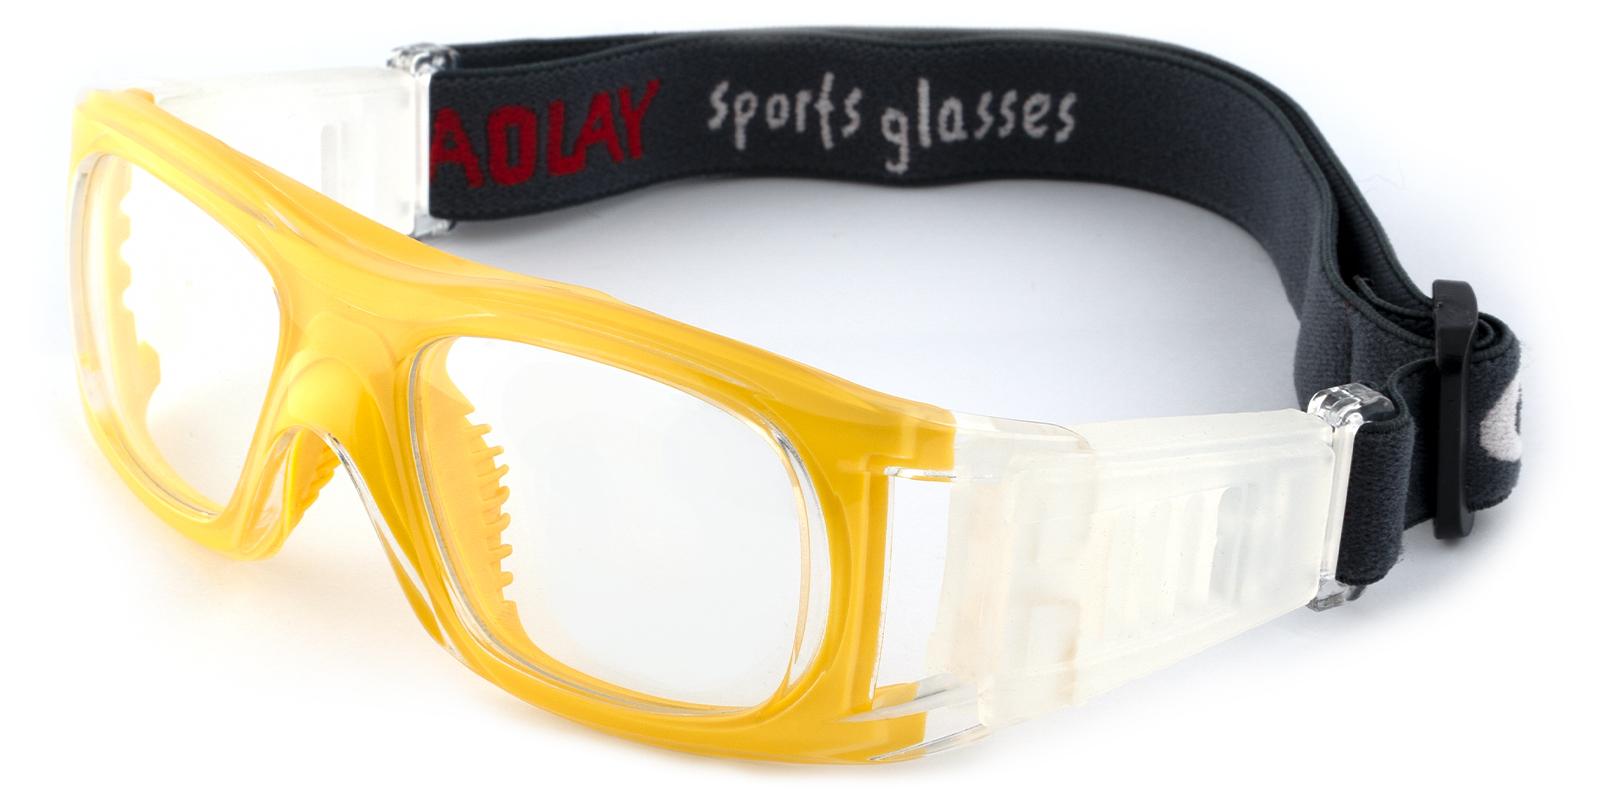 Christopher Yellow Plastic Eyeglasses , SportsGlasses Frames from ABBE Glasses